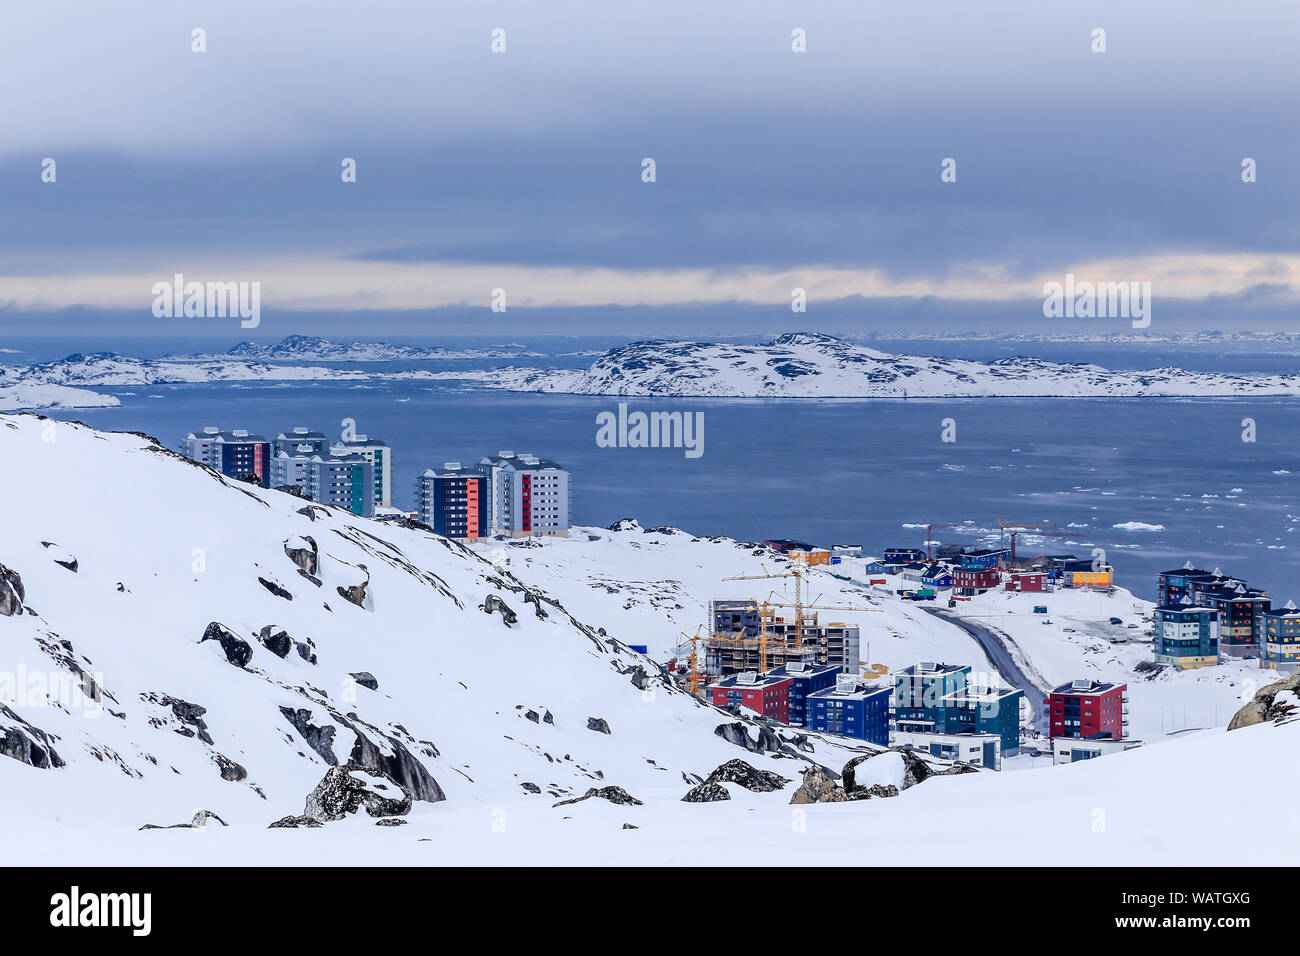 Arctic strade e costruzione di blocchi di capitale della Groenlandia Nuuk città al fiordo, Vista dalle colline di neve, Groenlandia Foto Stock